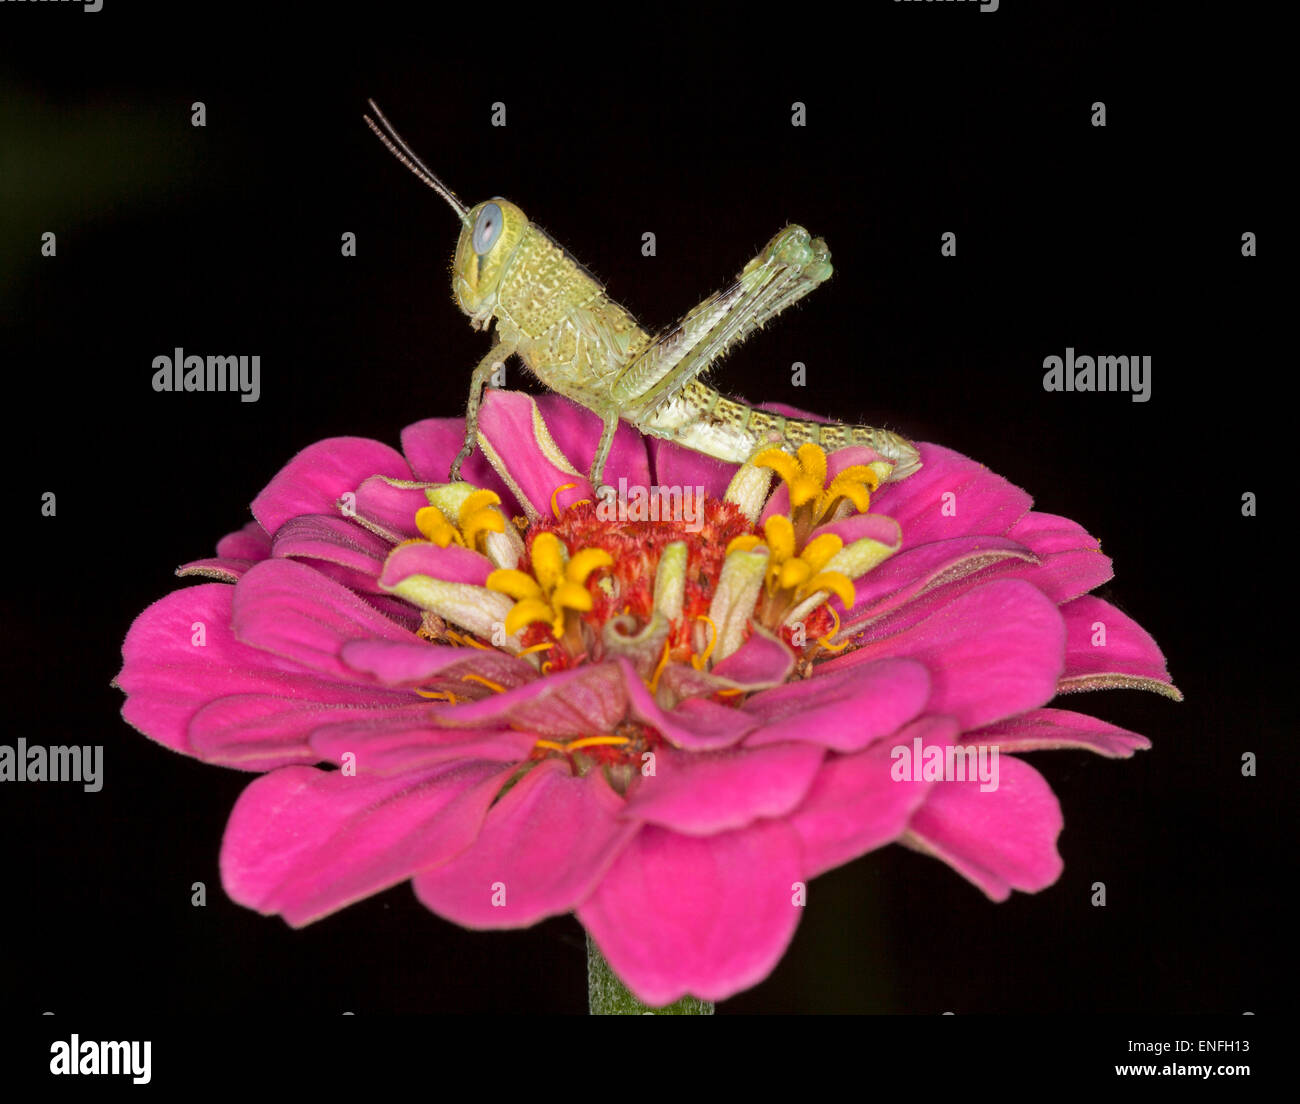 Verde chiaro / marrone grasshopper con occhi enormi e antenne visibili su vivid pink zinnia fiore su sfondo nero Foto Stock